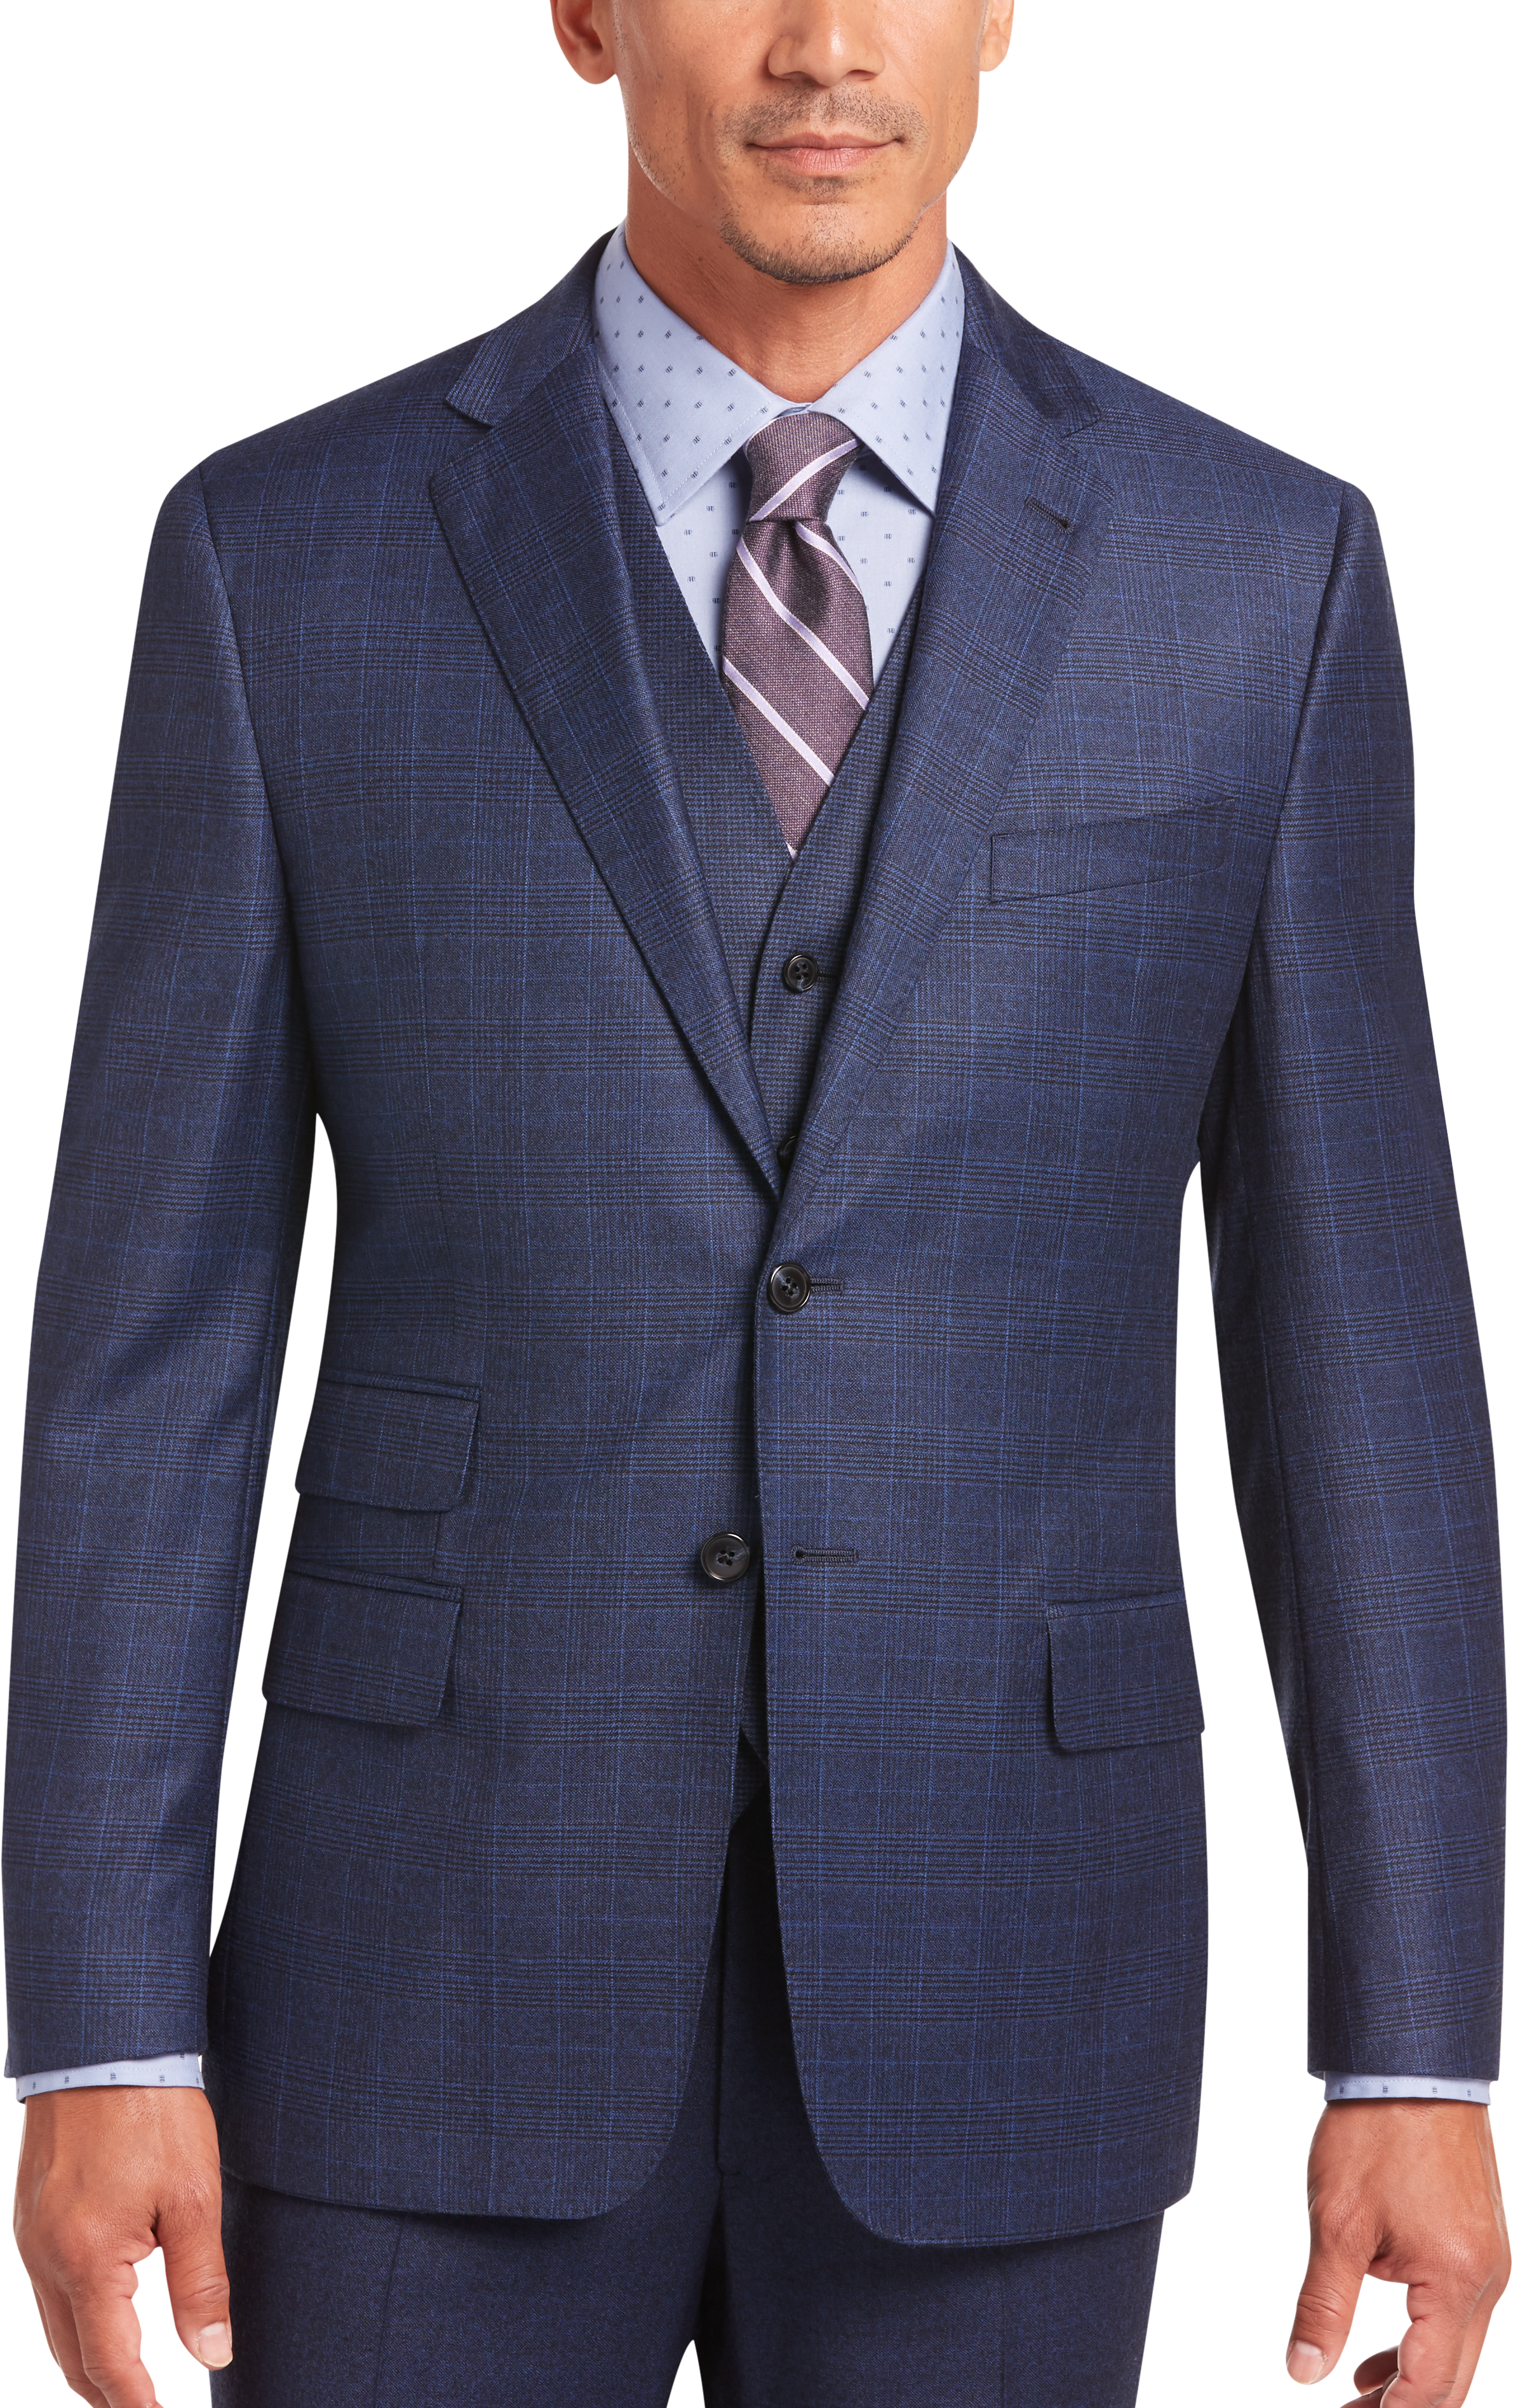 Joseph Abboud Blue Plaid Slim Fit Vested Suit - Men's Sale | Men's ...